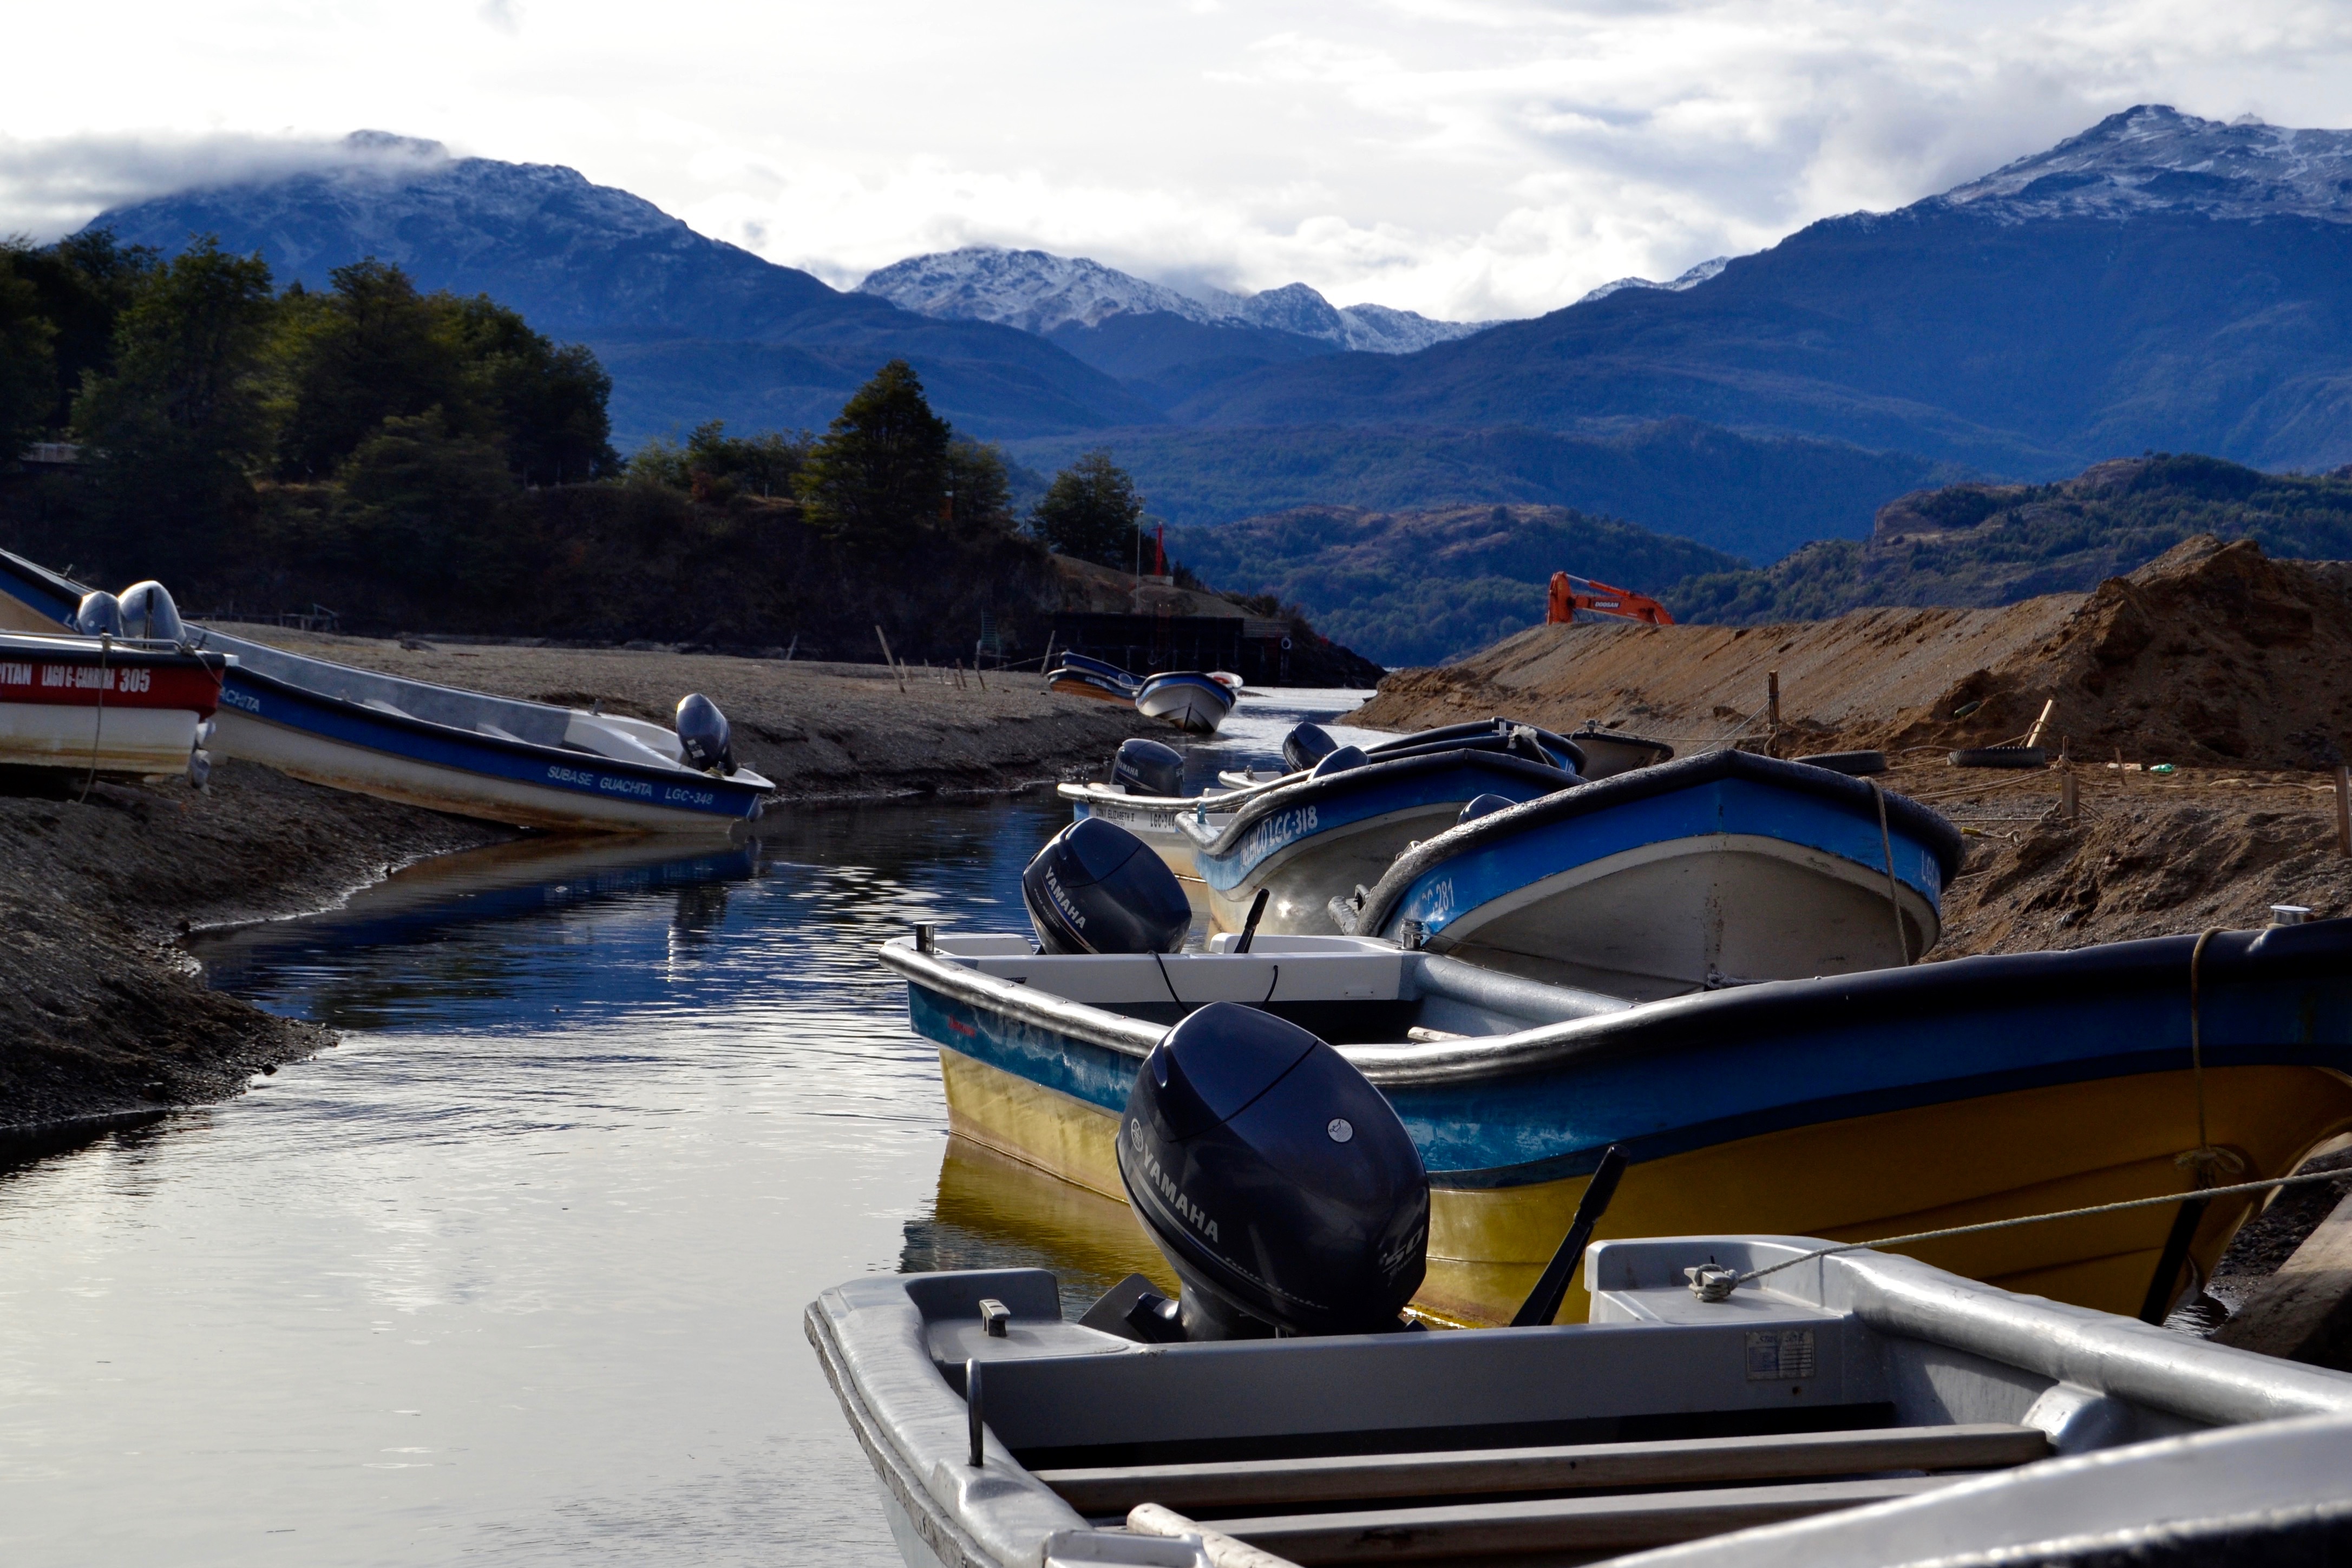 Las barcas reposan a la orilla del Lago General Carrera en Puerto Río Tranquilo, donde el principal atractivo turístico son las Capillas de Mármol.